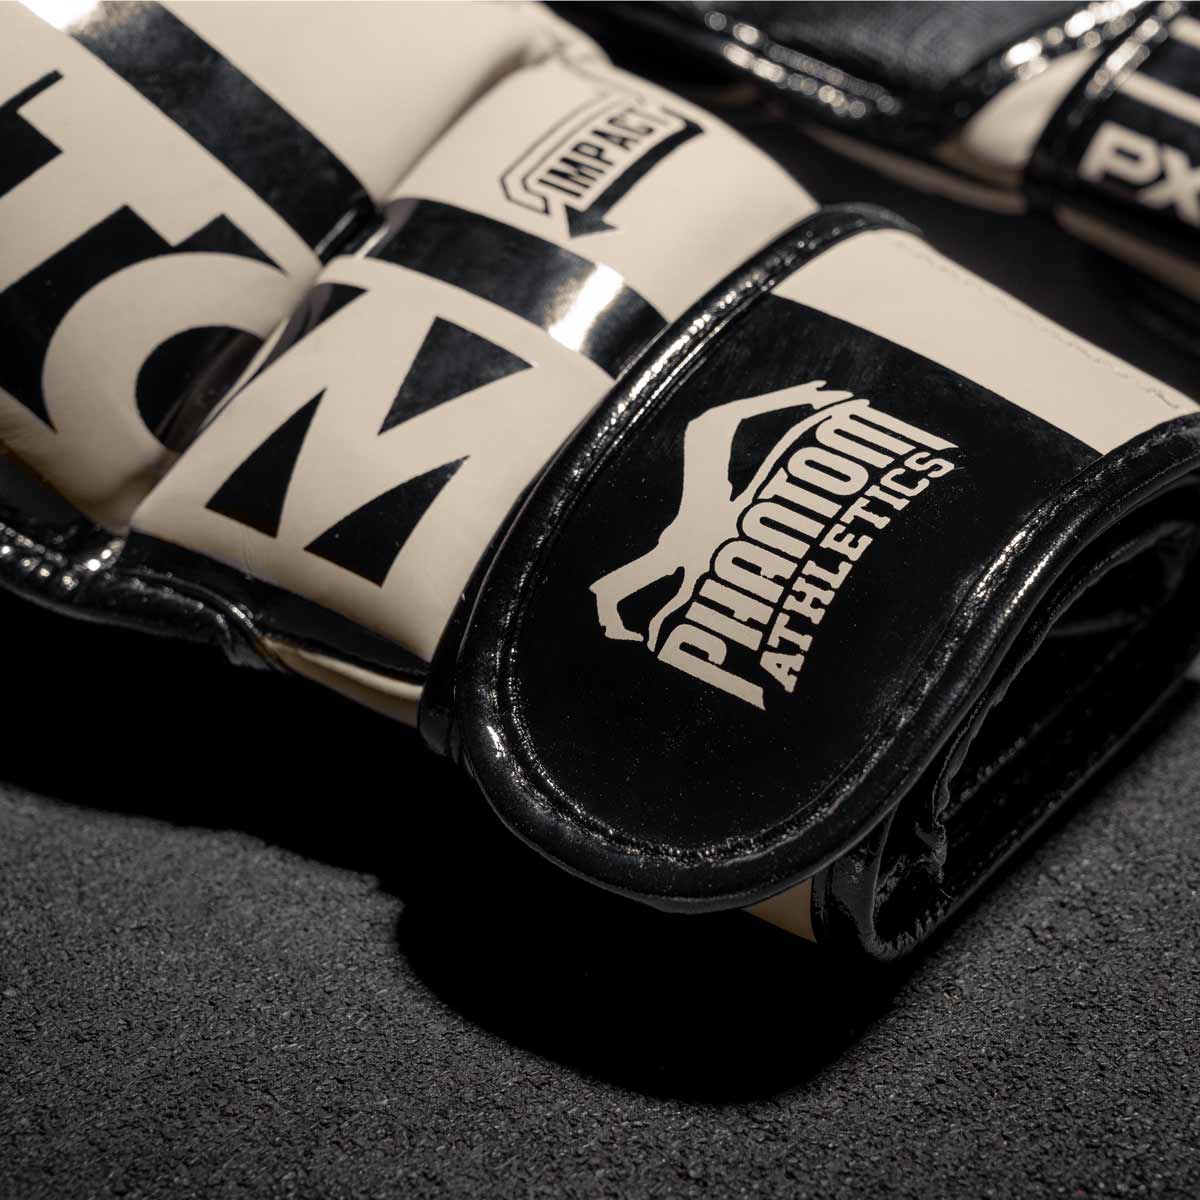 Der Print auf den Phantom APEX Sparring MMA Handschuhe in Sandfarben